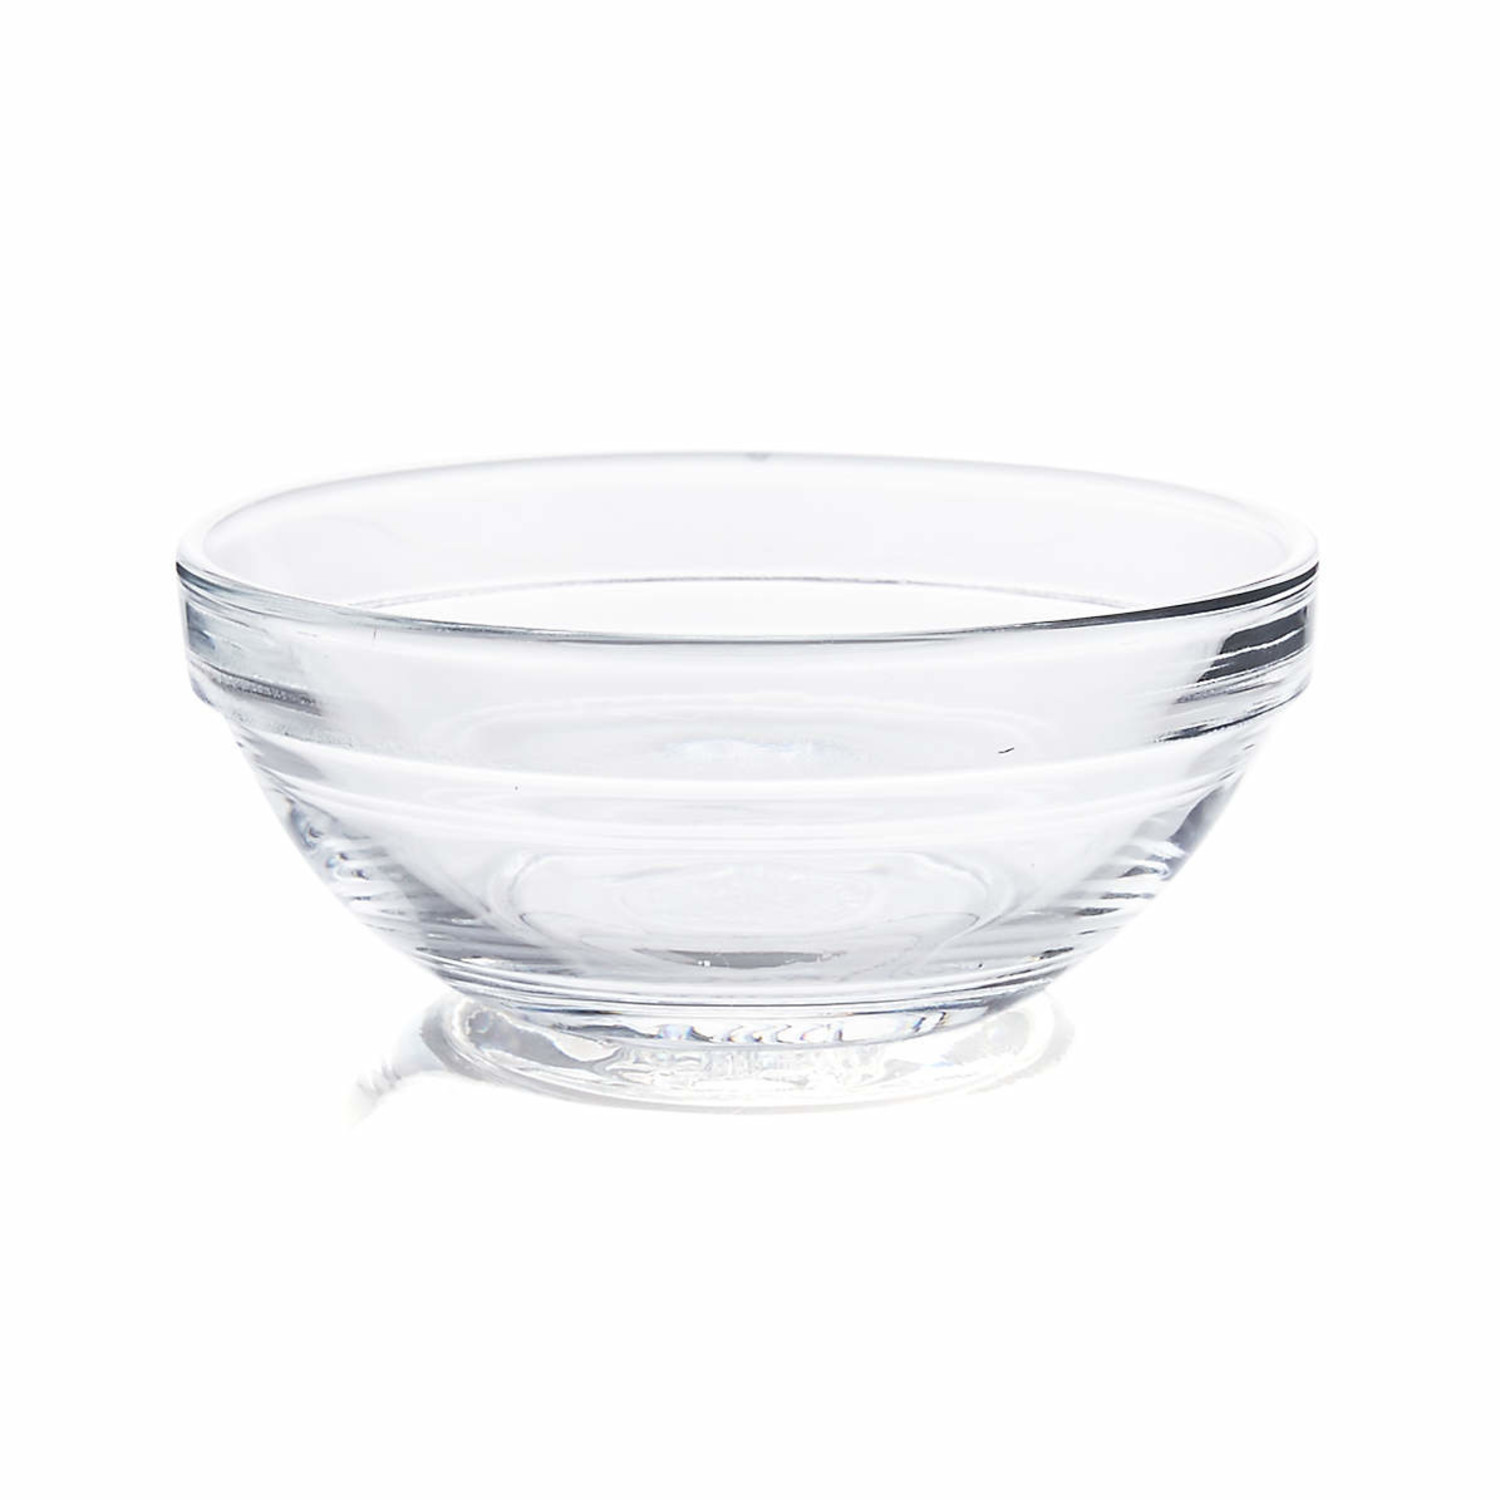 https://cdn.shoplightspeed.com/shops/633447/files/42724541/1500x4000x3/duralex-duralex-6-oz-glass-prep-bowl.jpg